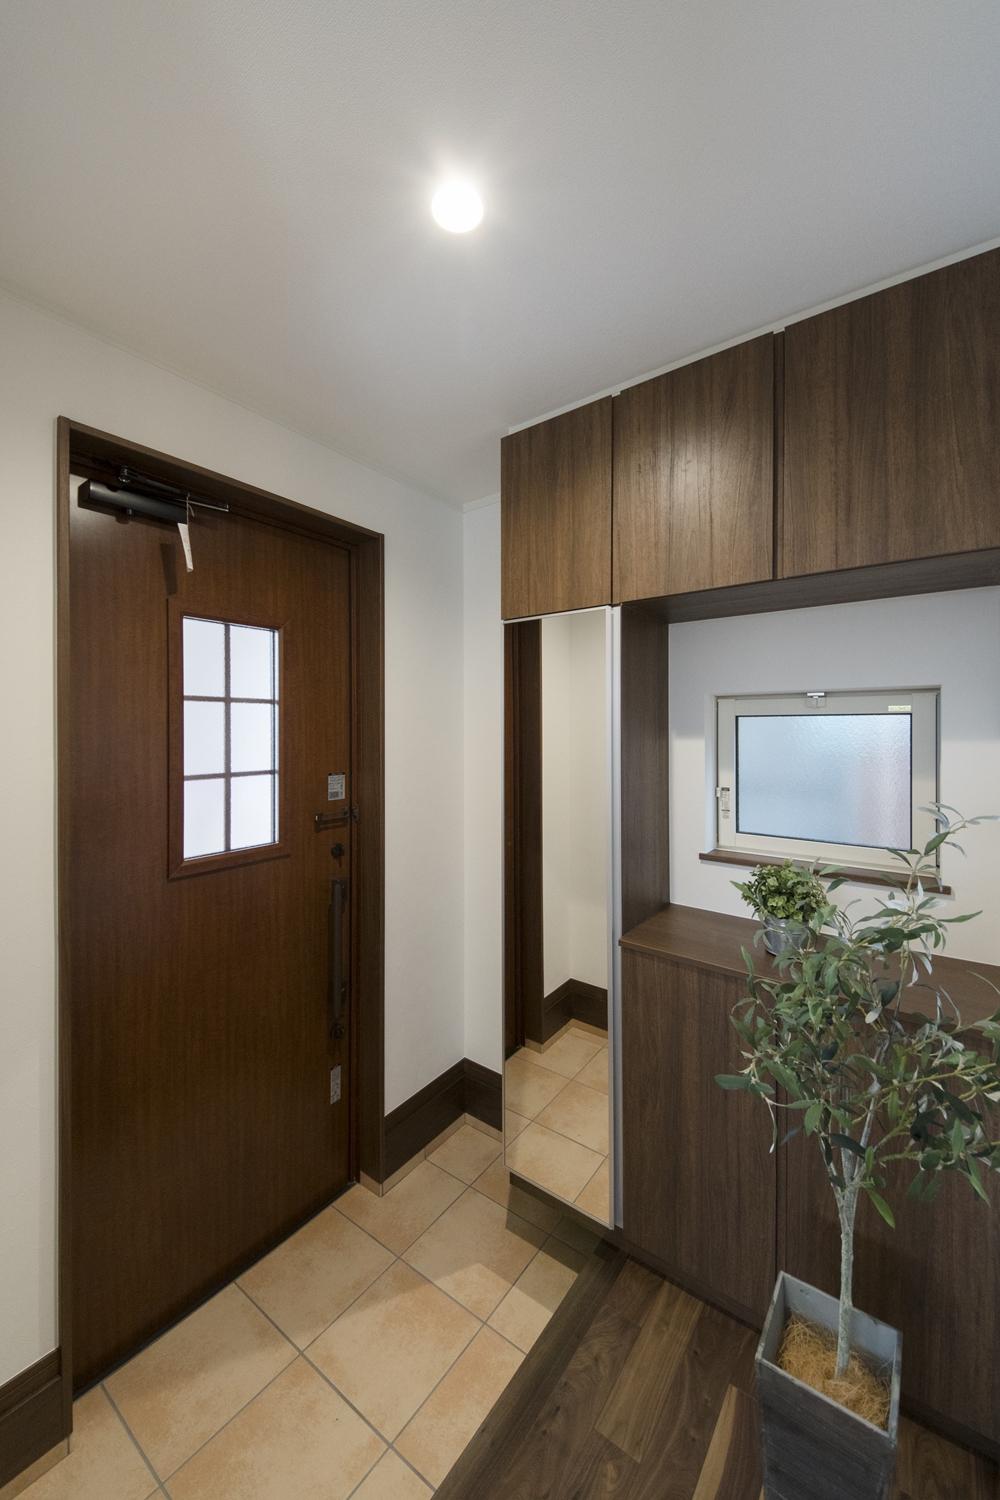 木の温もり感じる木目調のドアと収納、ベージュのテラコッタ調タイルが玄関をナチュラルな雰囲気に包みます。